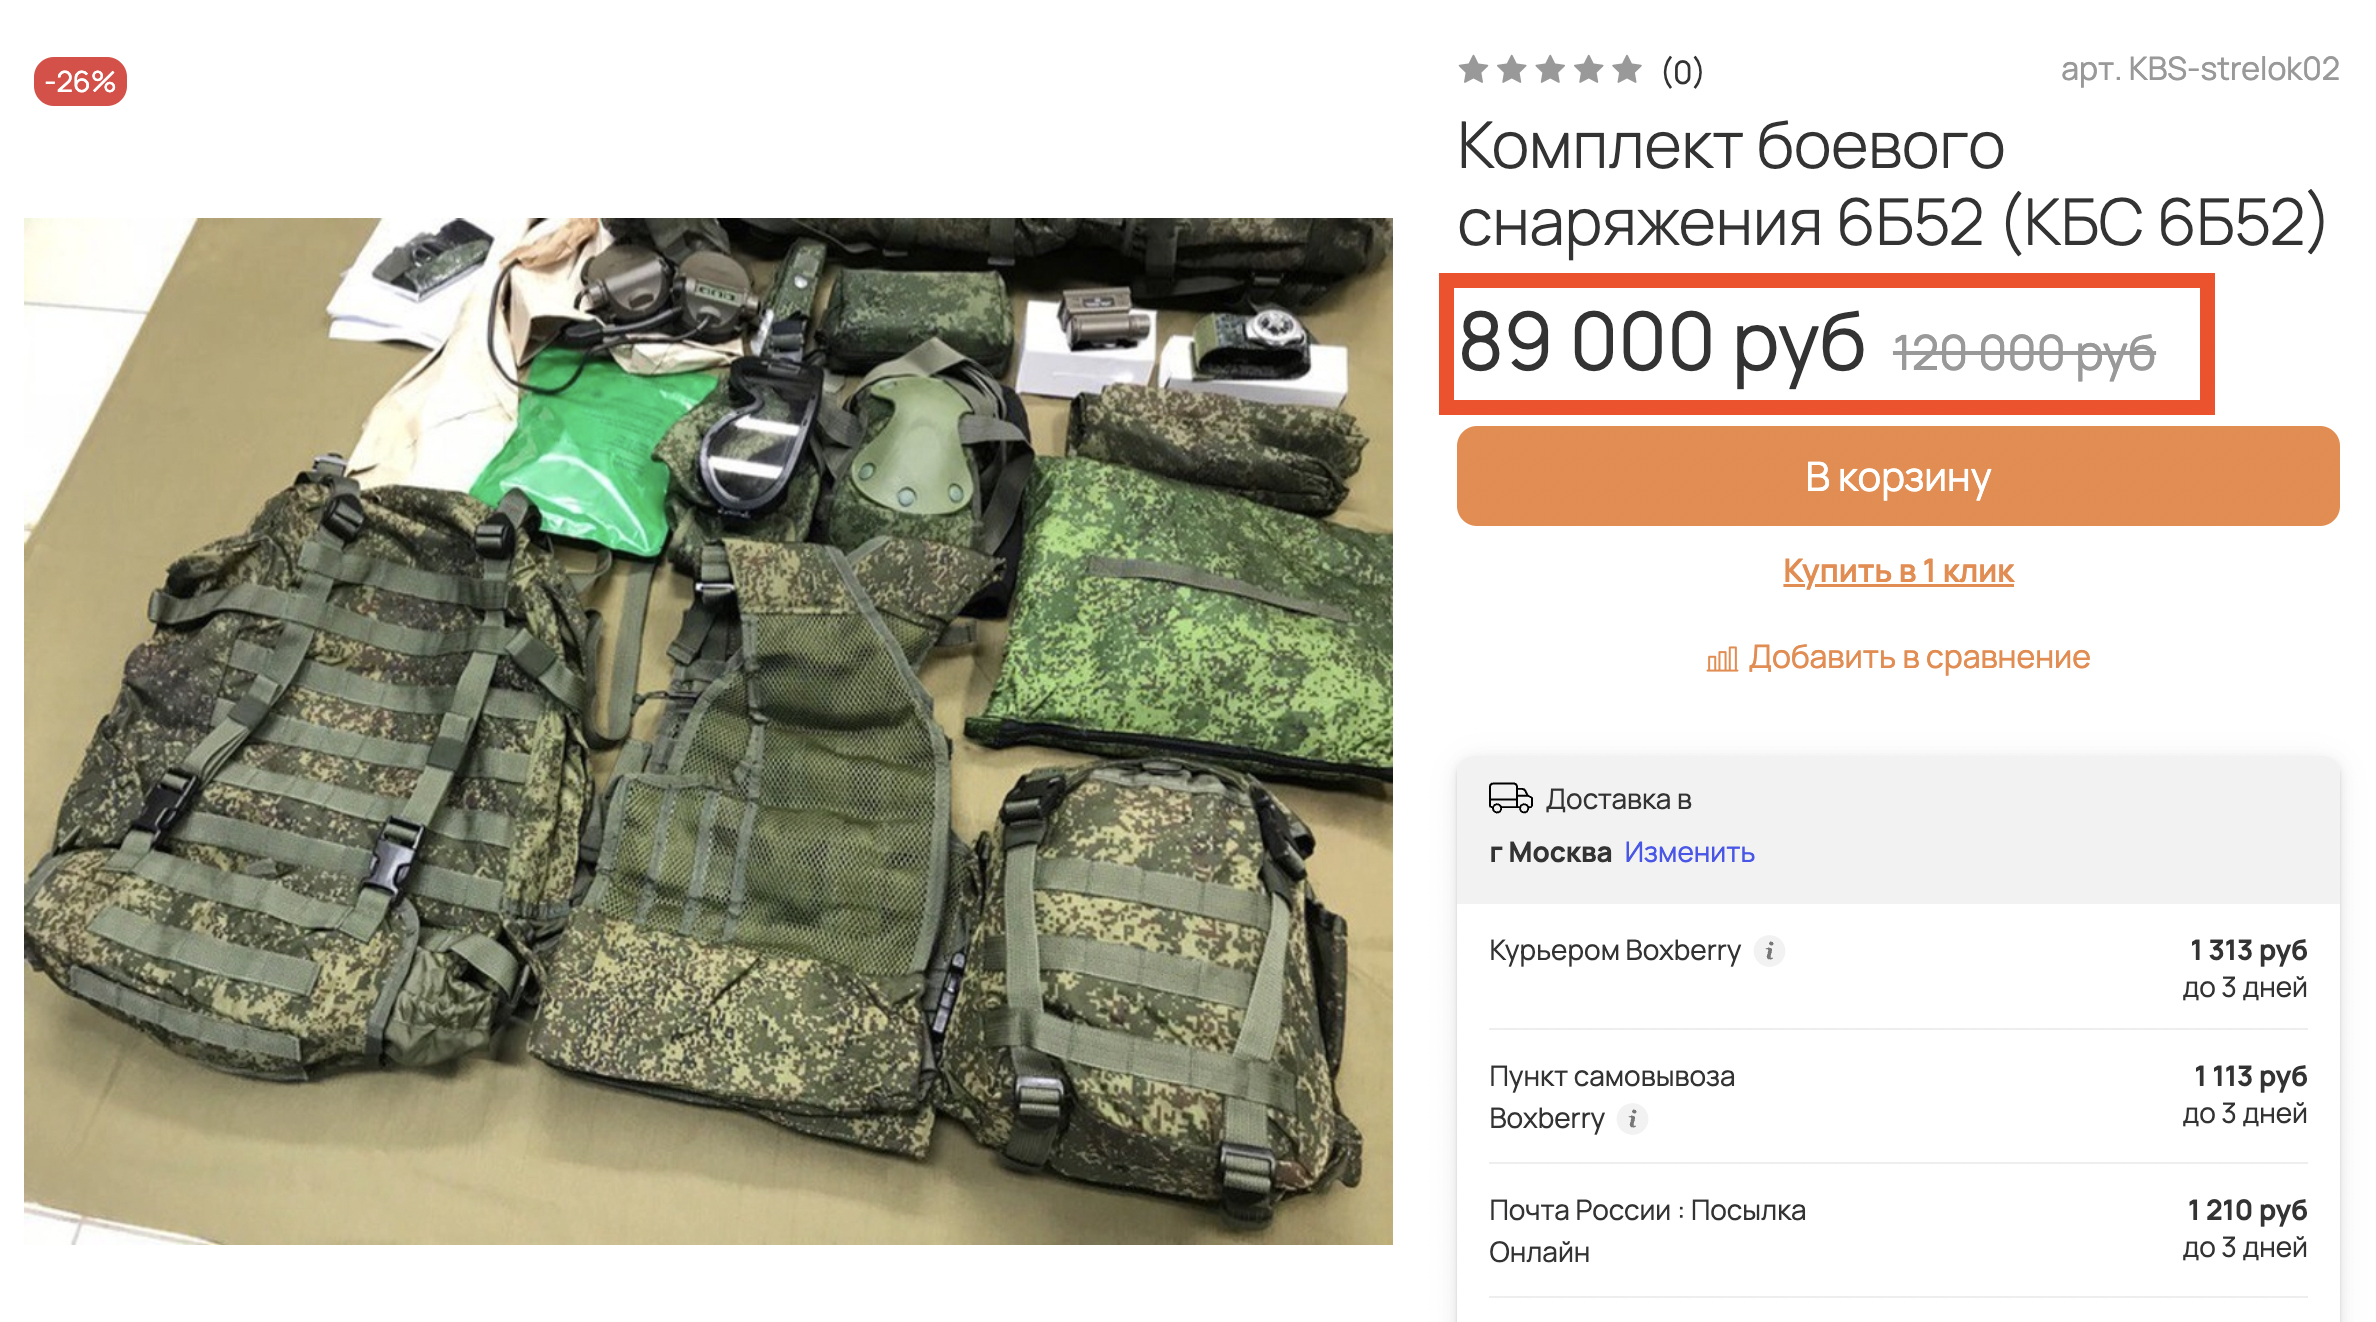 90 тыс. рублей. И это со скидкой! Фото © varyag.pro